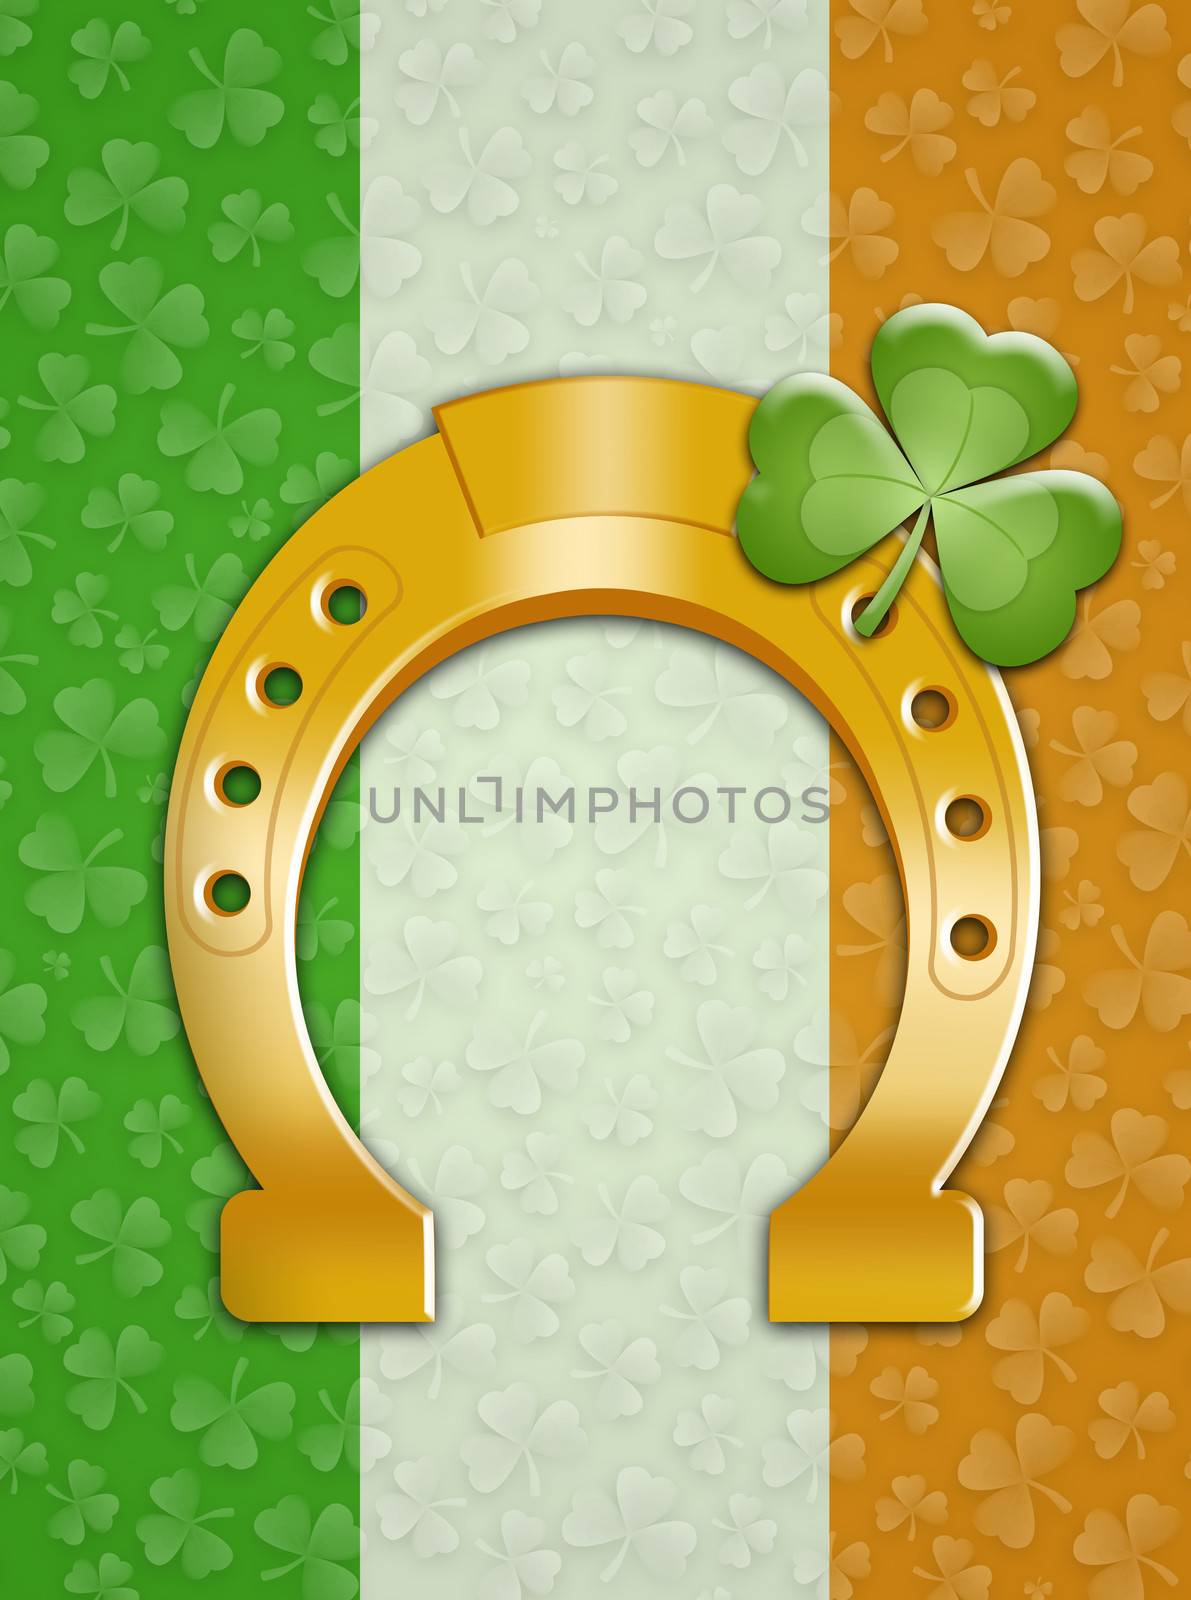 horseshoe with Ireland flag by sognolucido